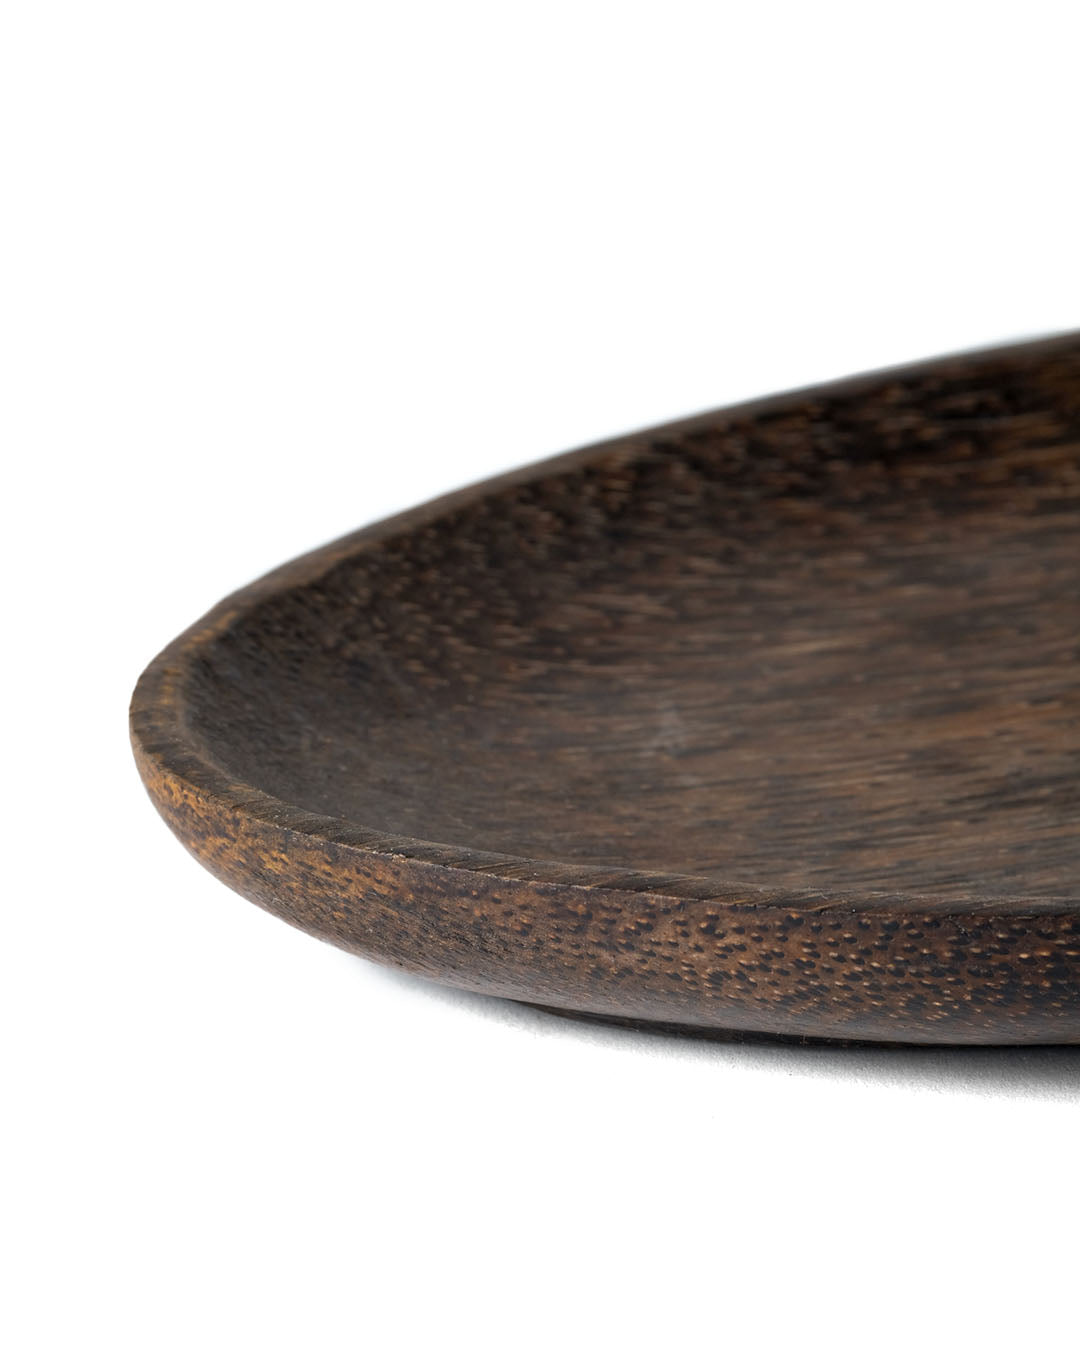 Plato de servir de madera de palmera oval Merauke, hecho a mano en Indonesia,  altura 2,5 cm largo 30 cm profundidad 15 cm.